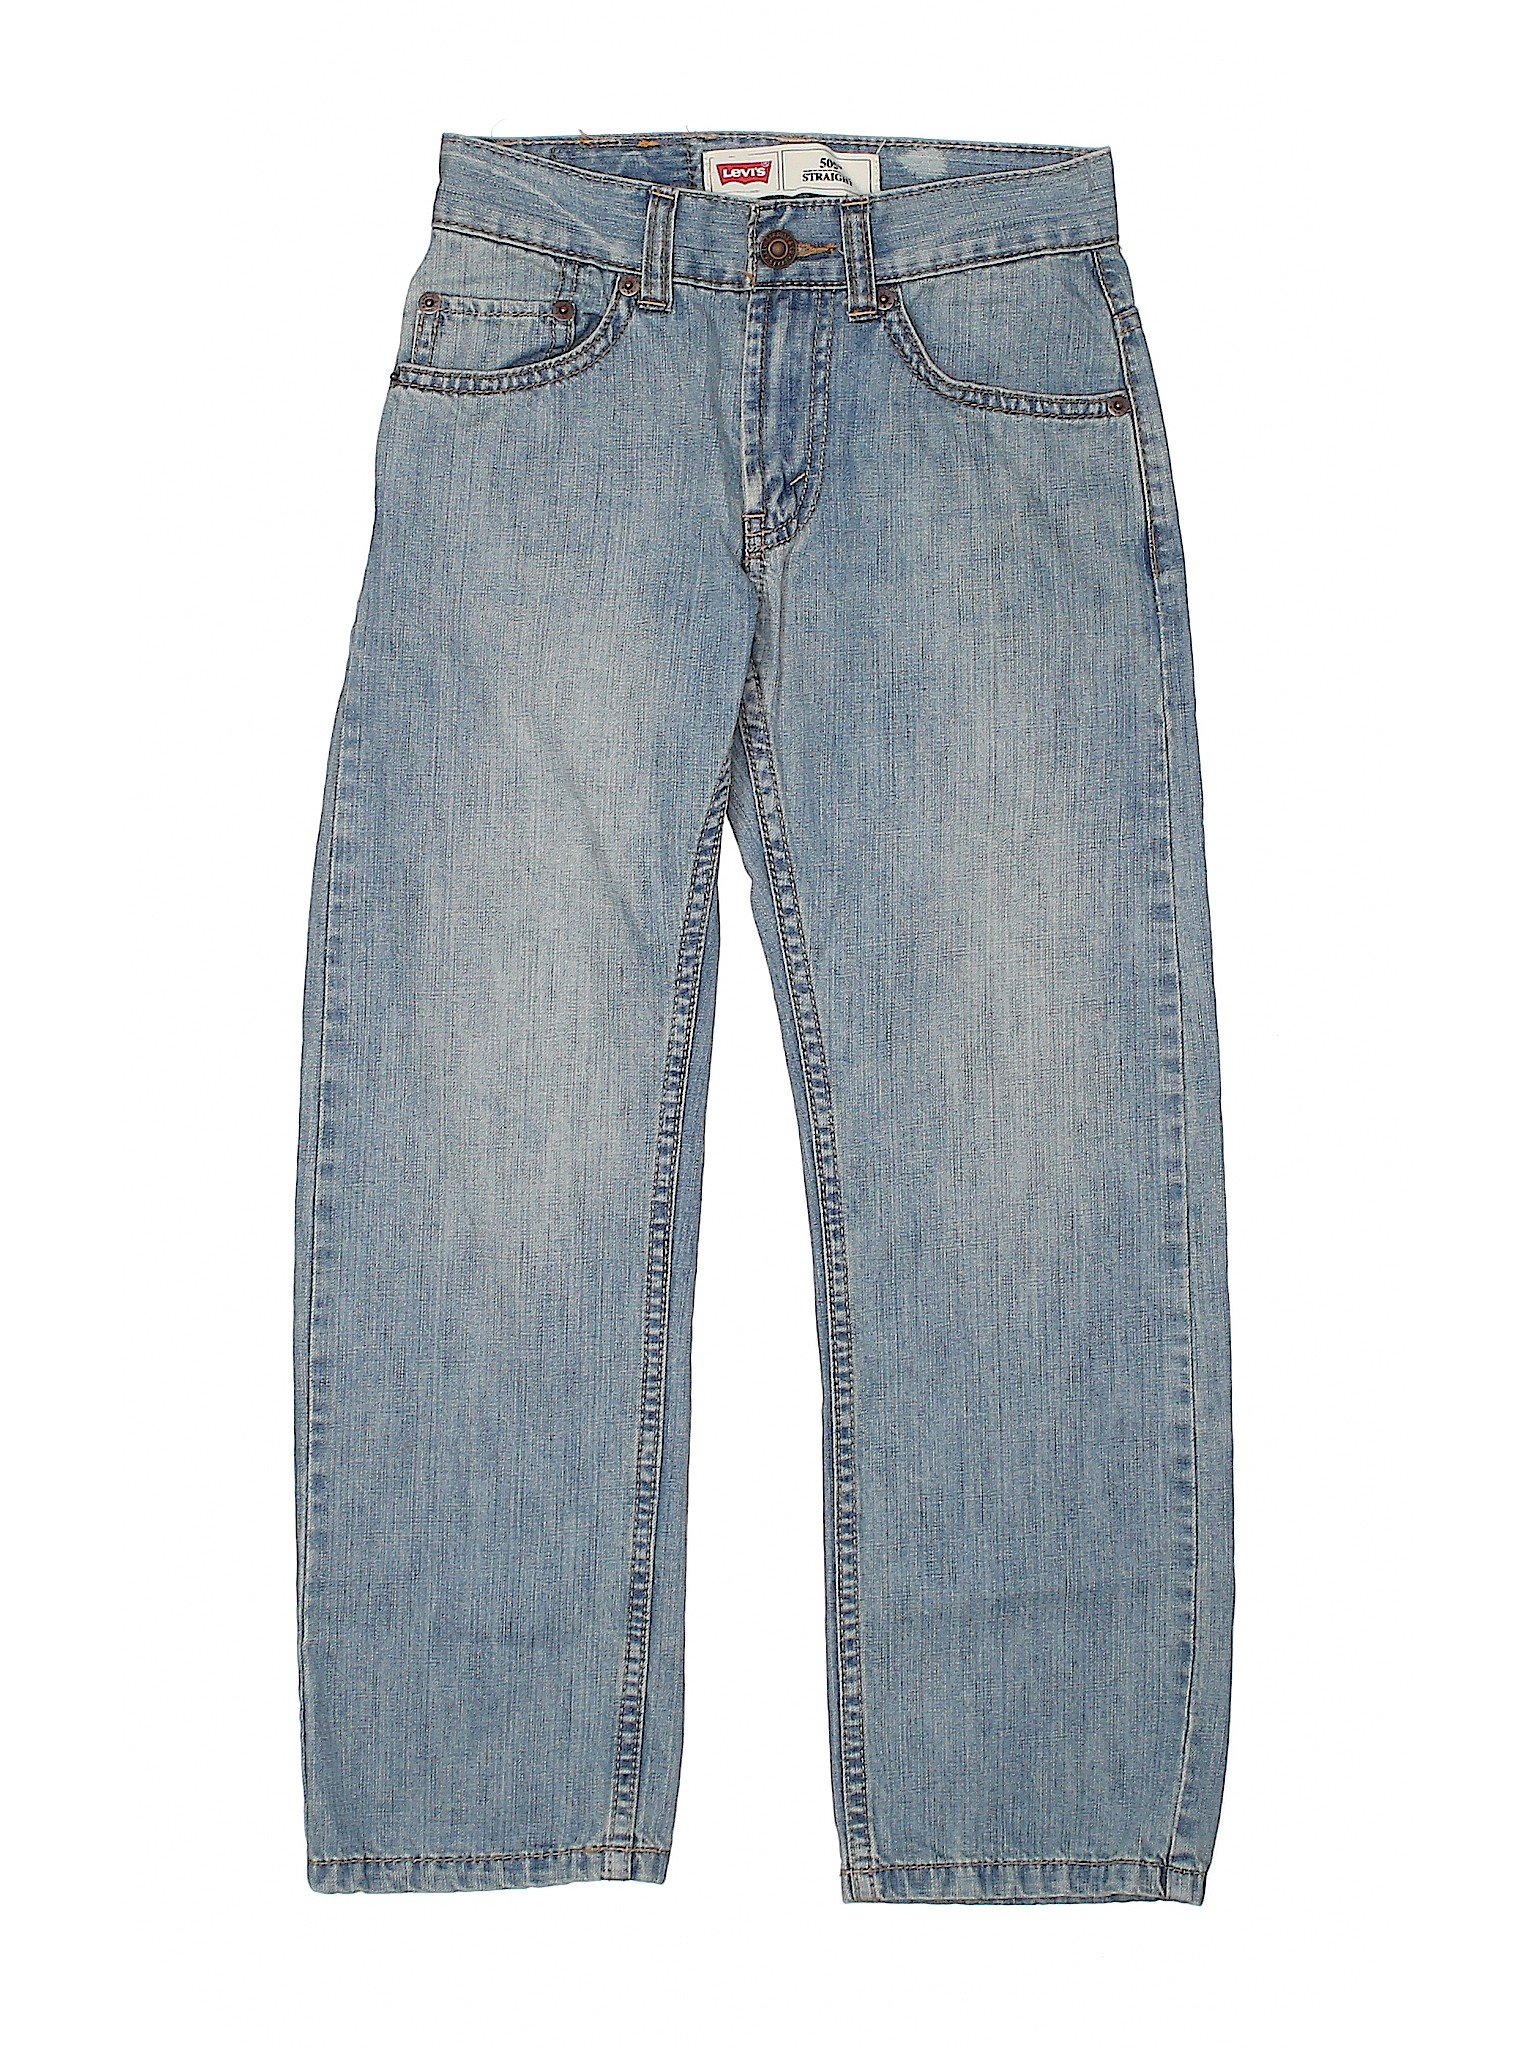 Levi's 100% Cotton Blue Jeans Size 8 - 68% off | thredUP